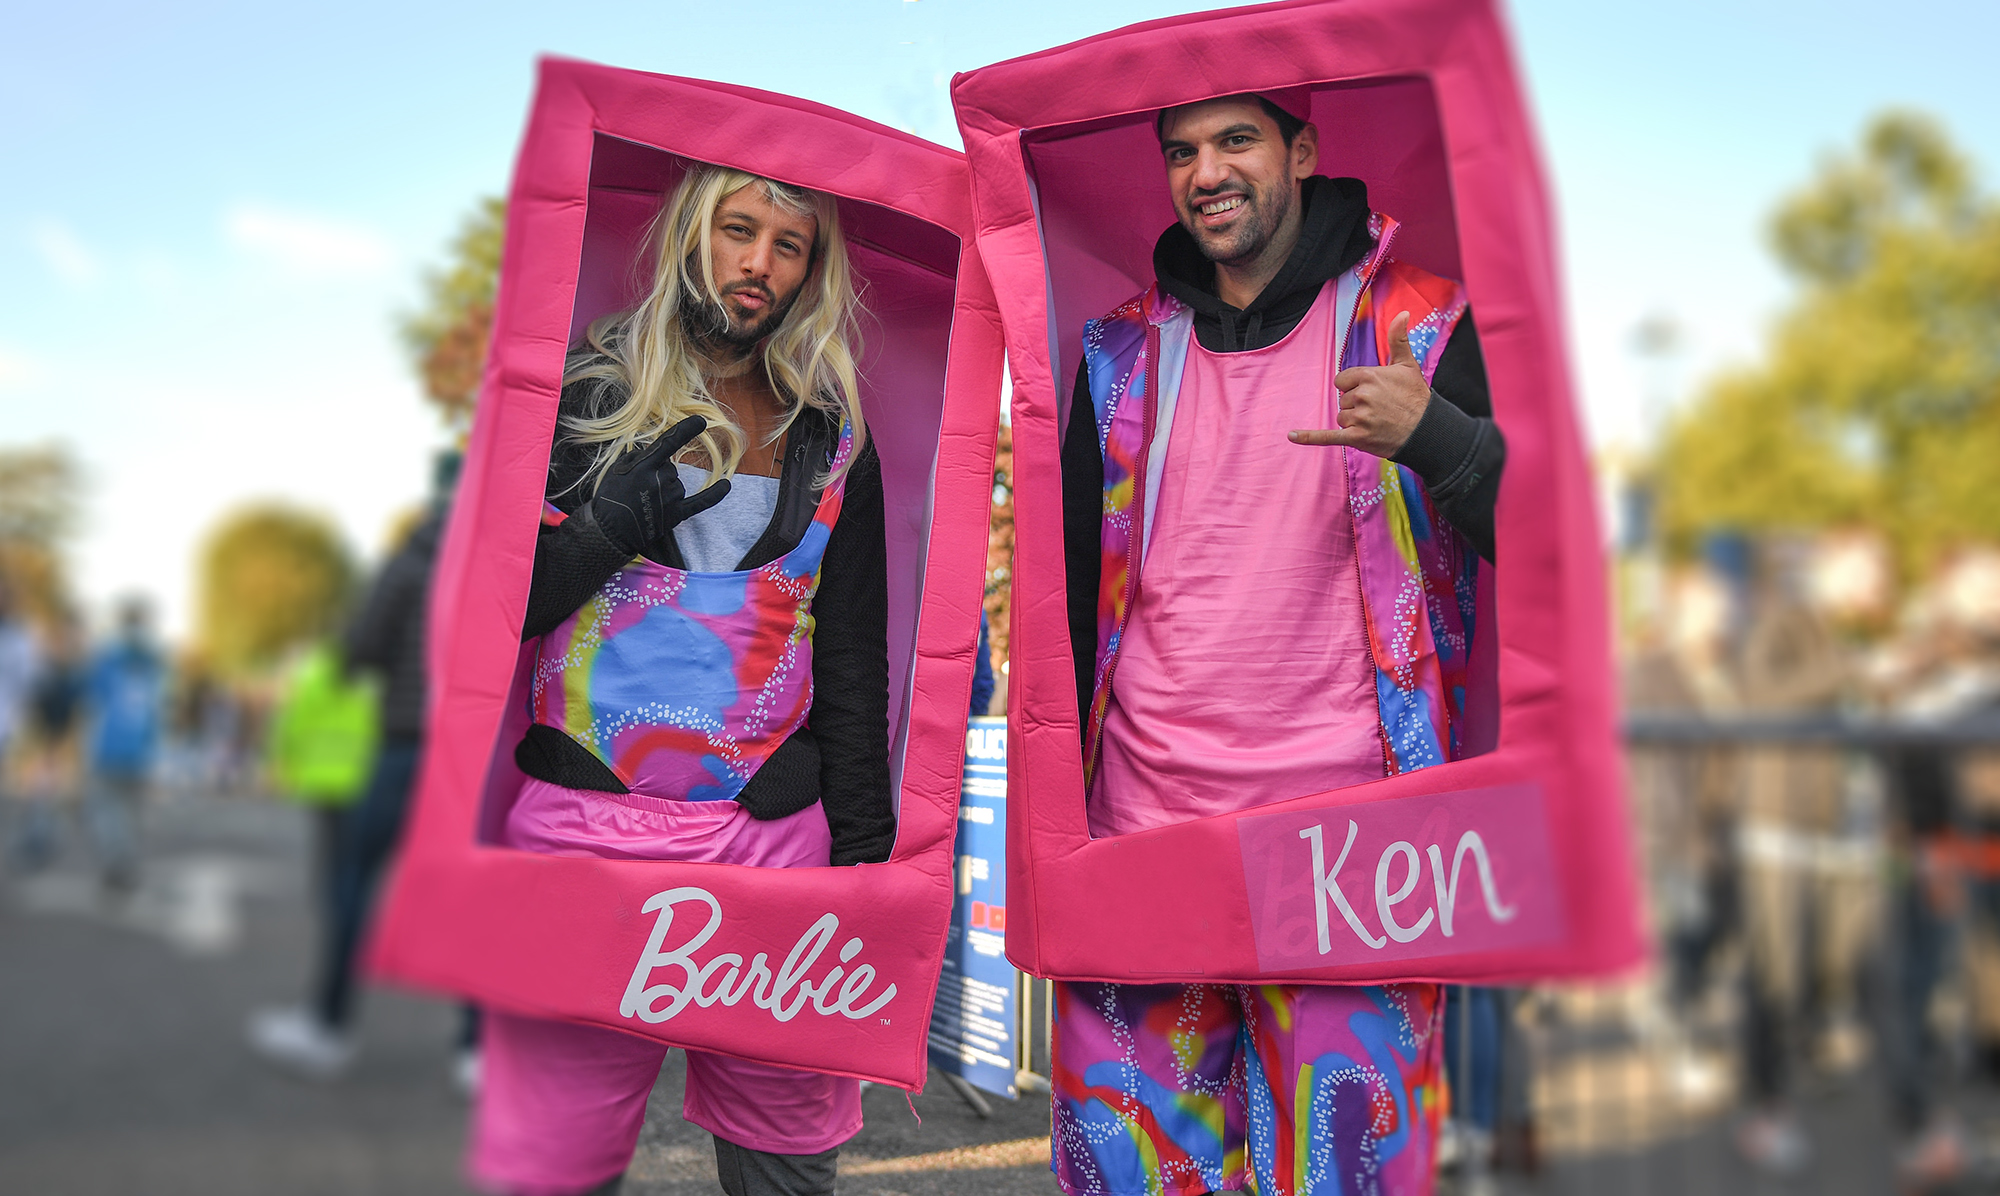 Zwei Männer kostümiert als Barbie und Ken in einer Verpackung.